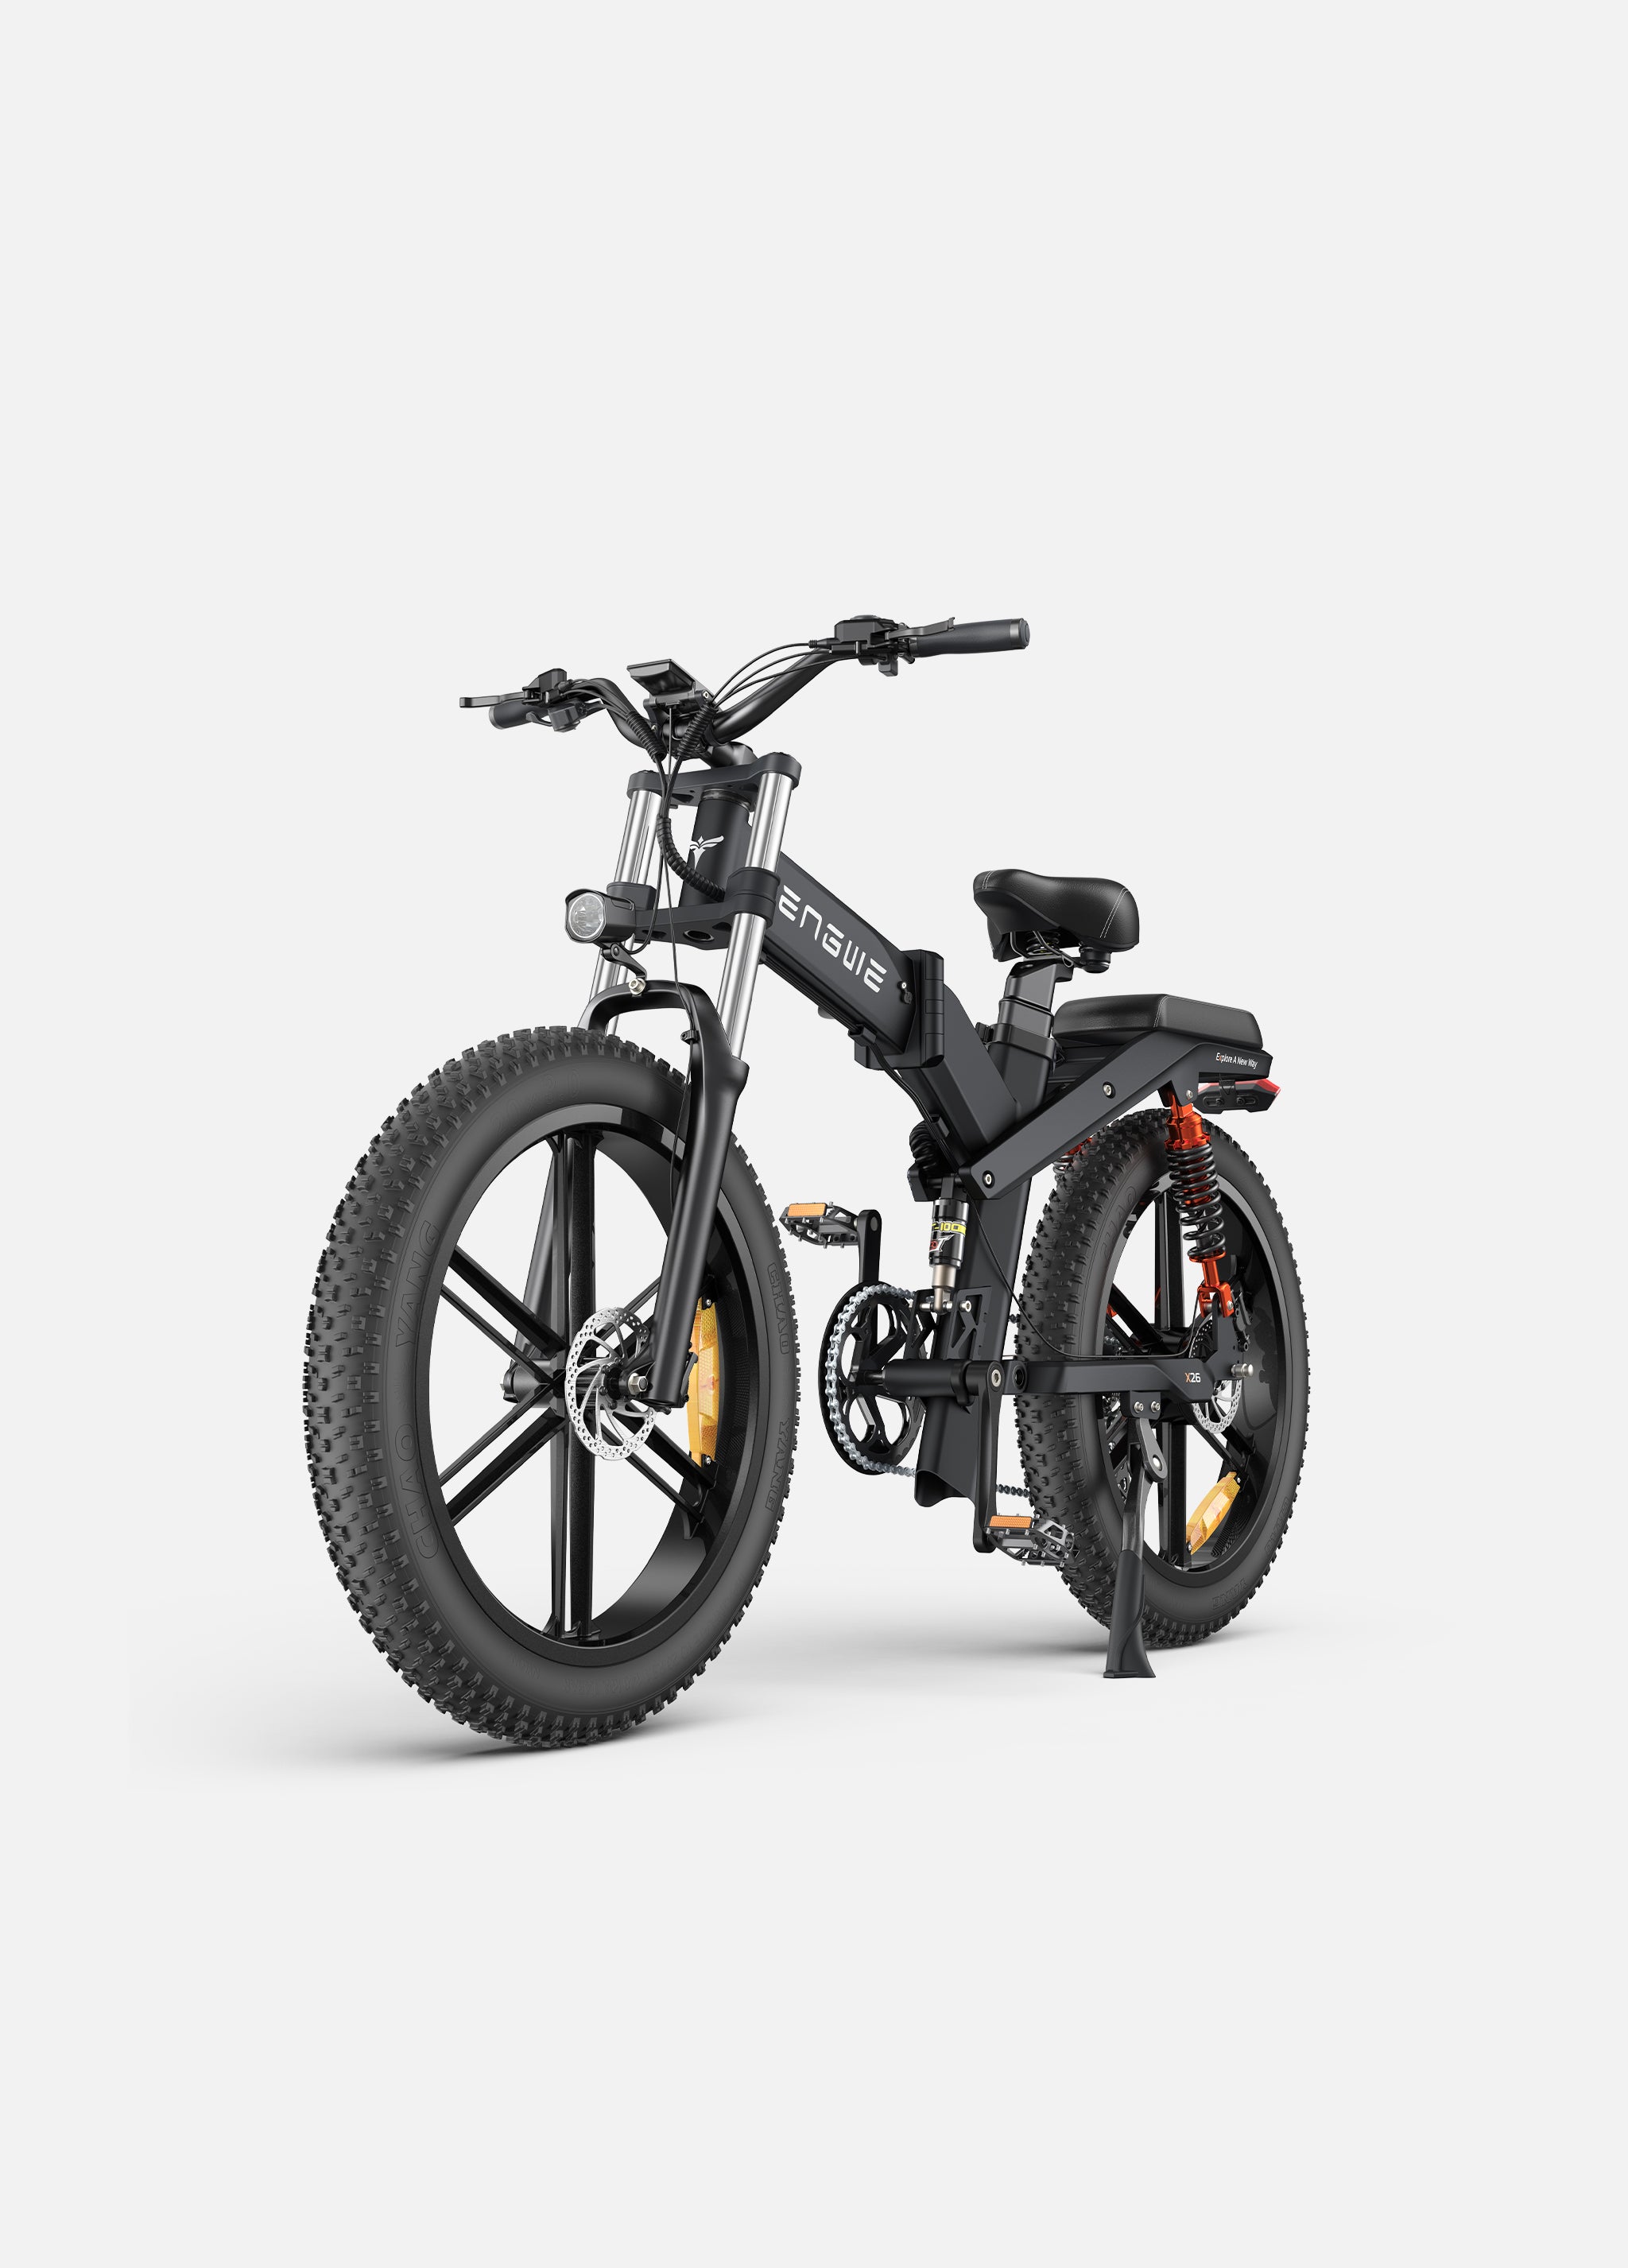 a black engwe x26 foldable electric mountain bike